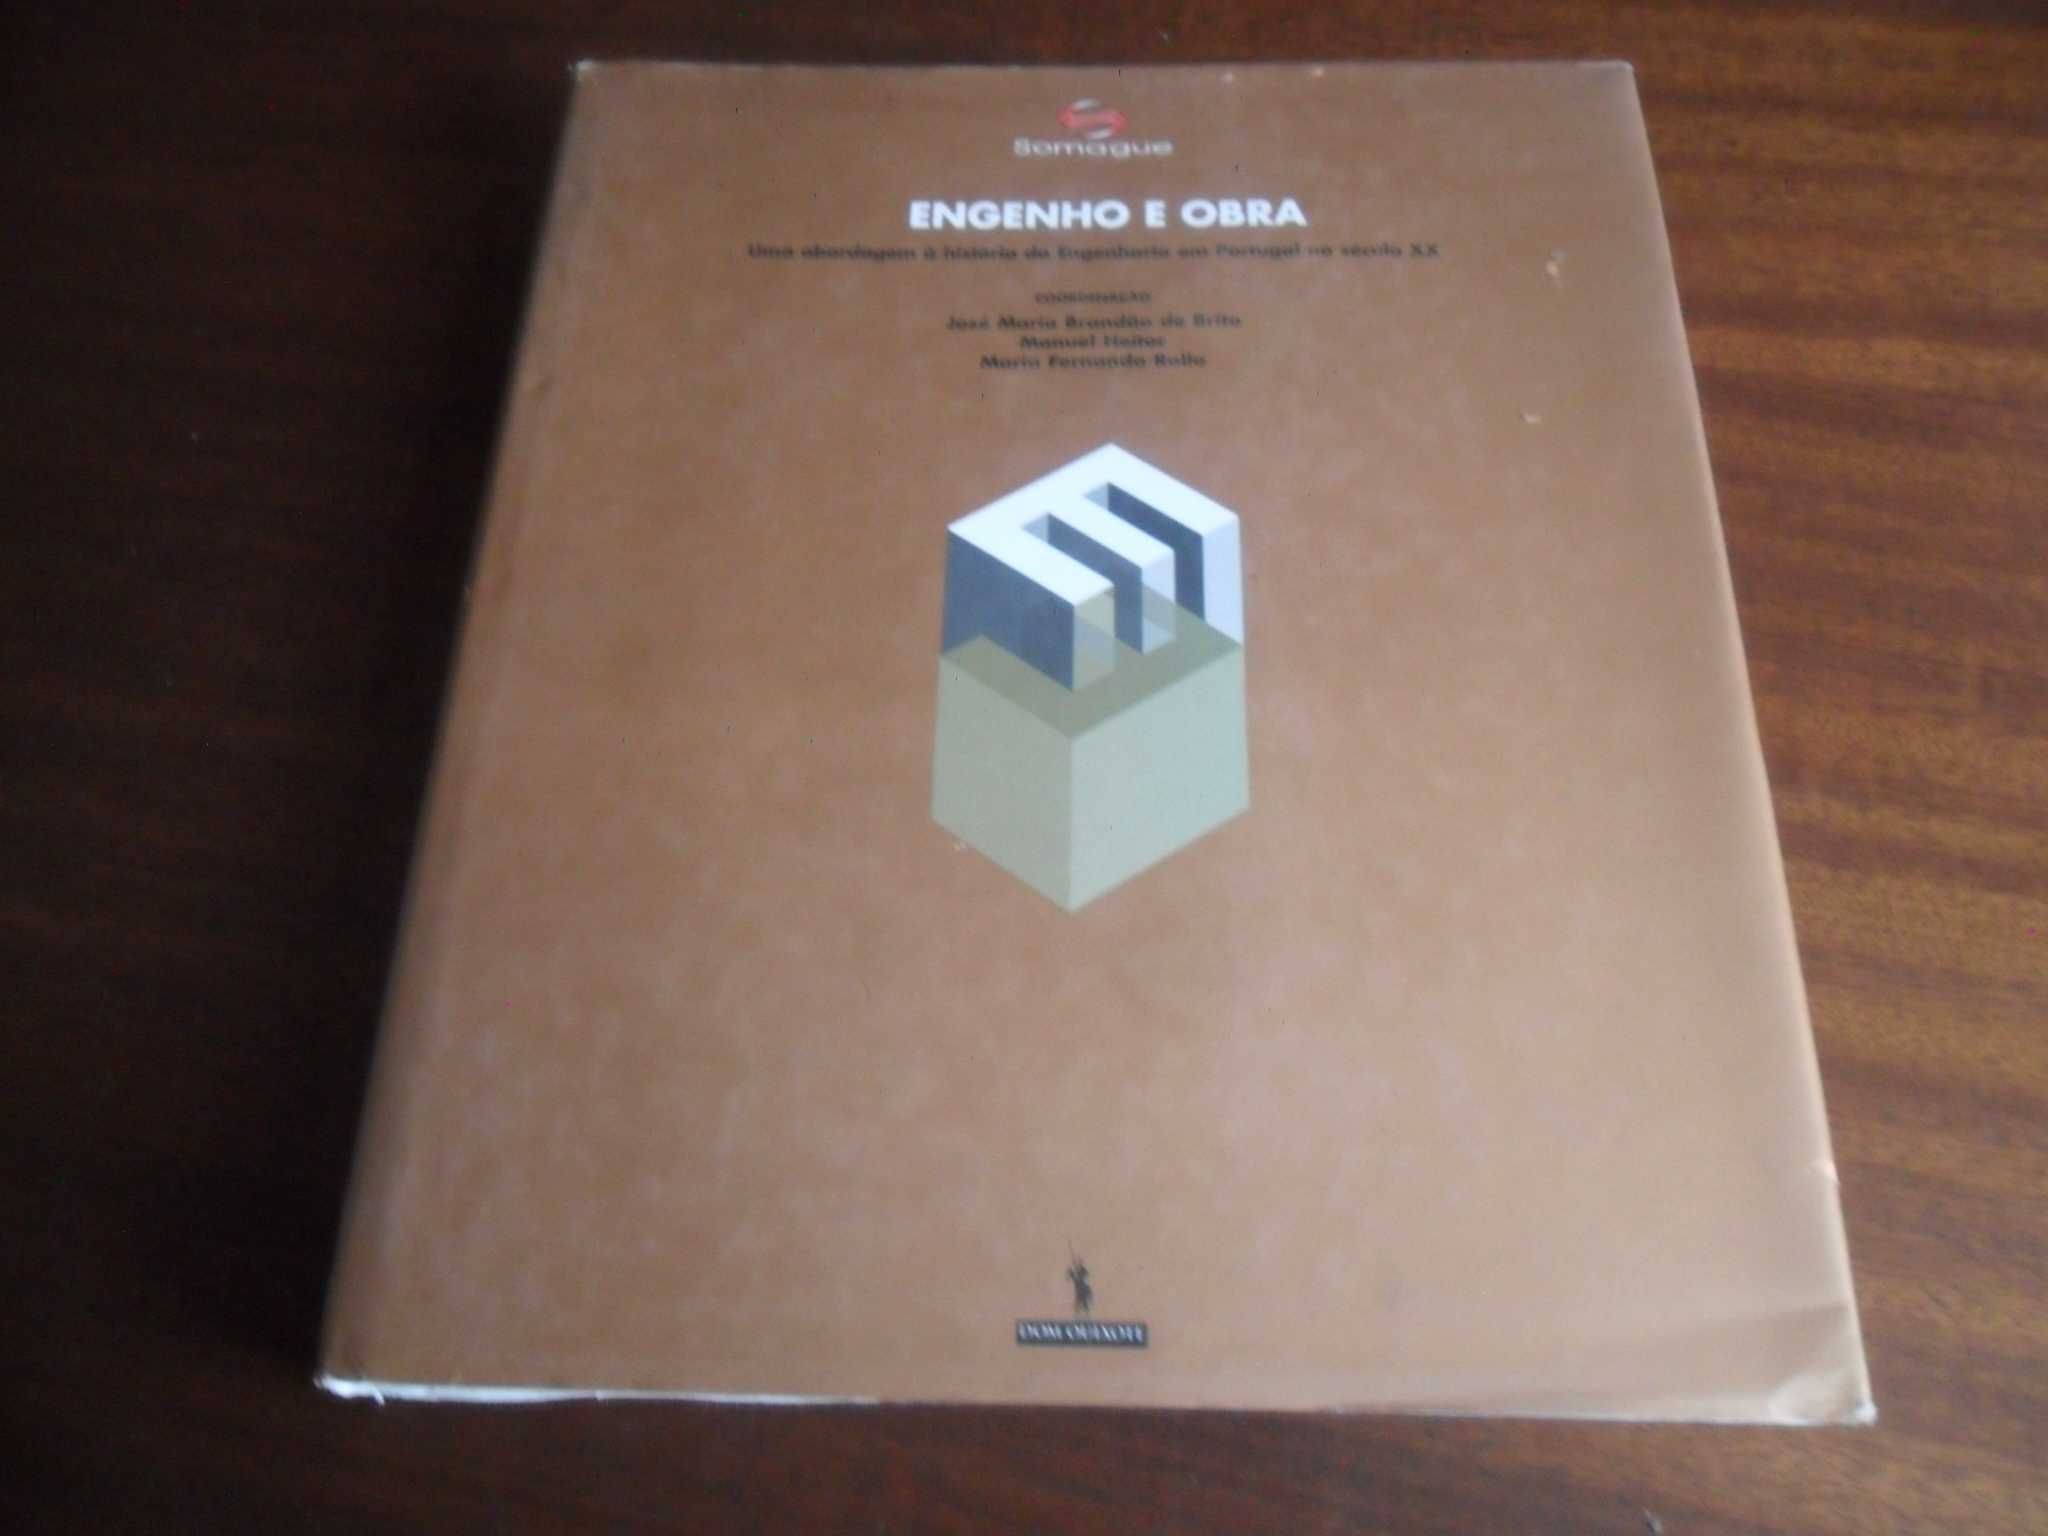 "Engenho e Obra" de José Maria Brandão de Brito e Outros - 1ª Ed. 2002